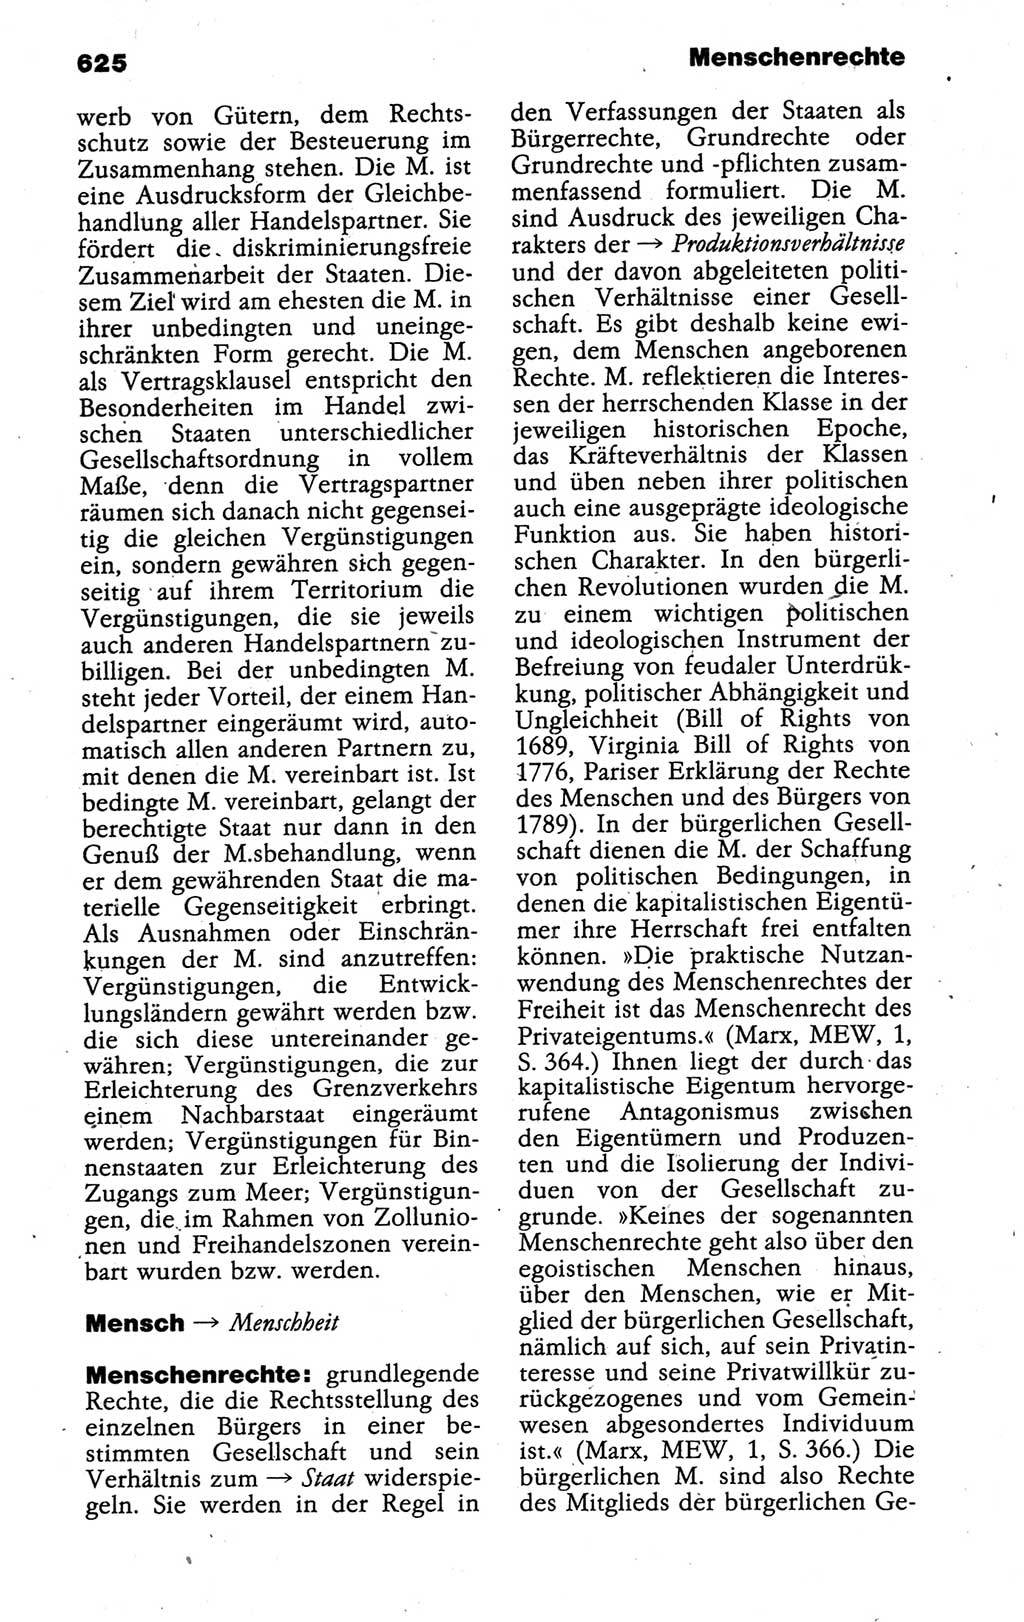 Kleines politisches Wörterbuch [Deutsche Demokratische Republik (DDR)] 1988, Seite 625 (Kl. pol. Wb. DDR 1988, S. 625)